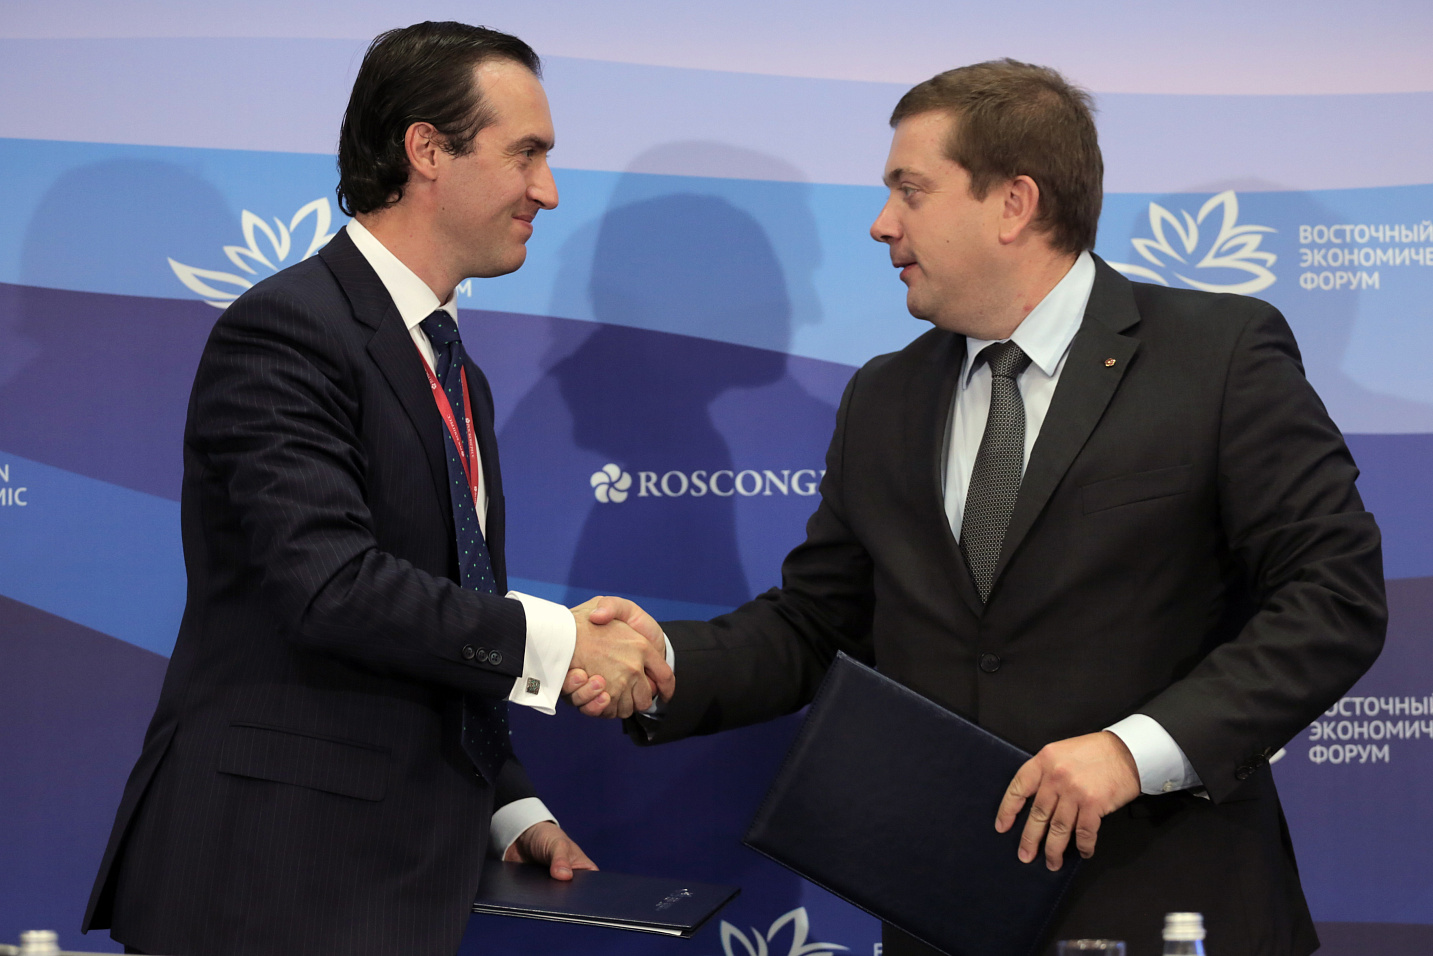 Фонд «Росконгресс» и Форум Australian Davos Connection Ltd  подписали соглашение о сотрудничестве